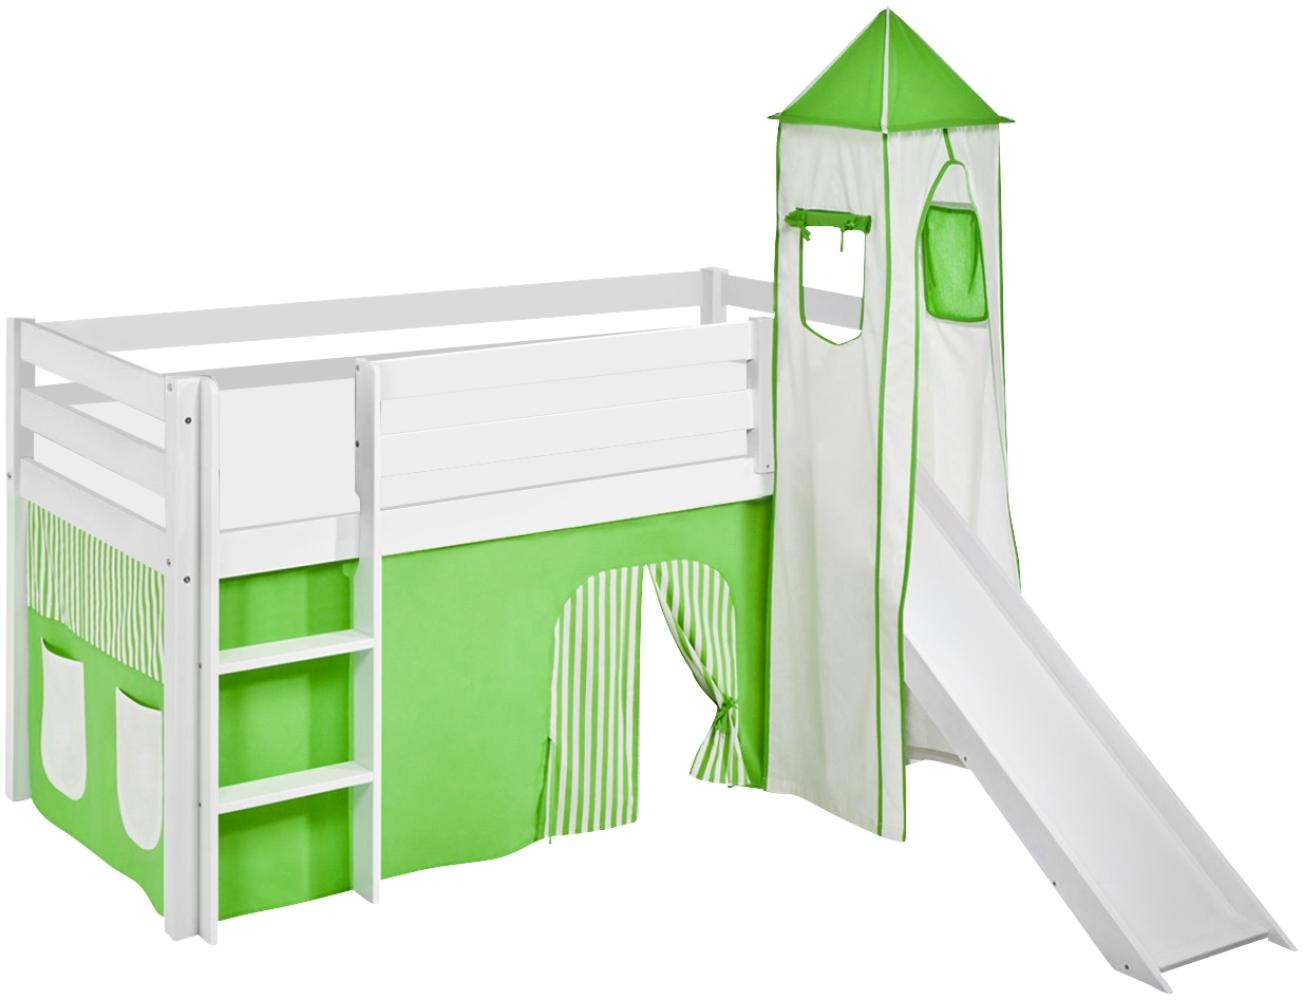 Lilokids 'Jelle' Spielbett 90 x 200 cm, Grün Beige, Kiefer massiv, mit Turm, Rutsche und Vorhang Bild 1